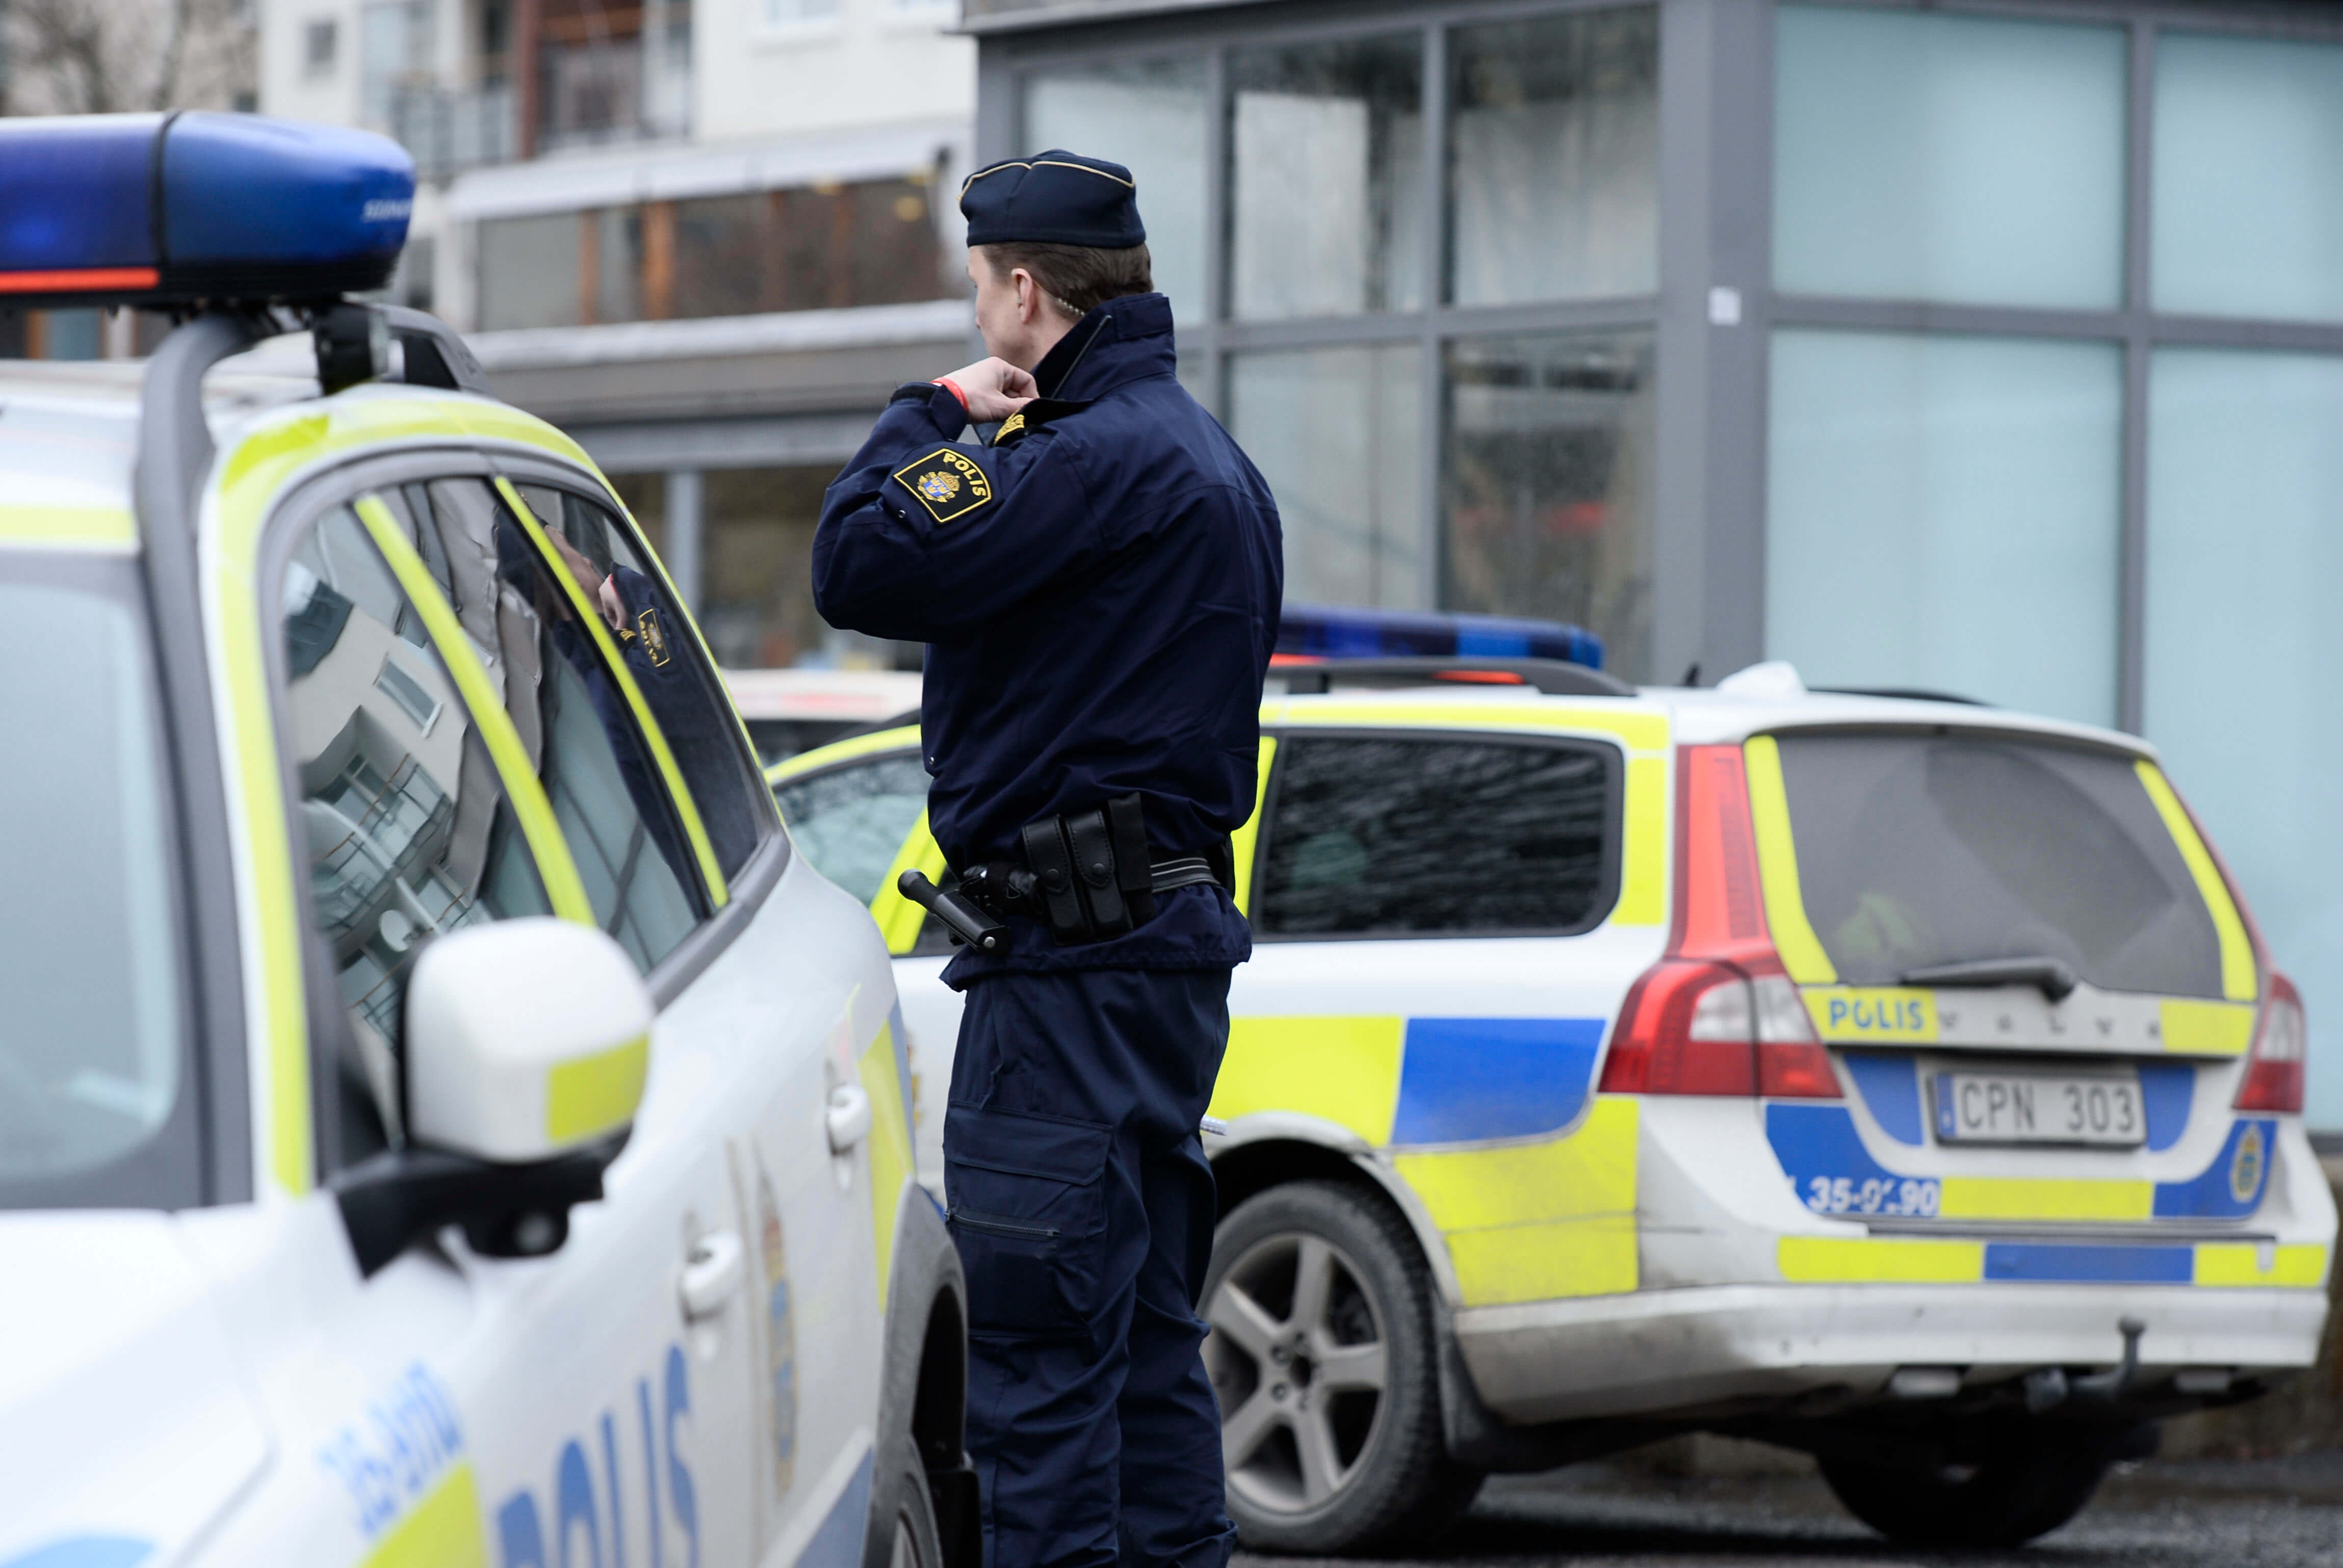 Attack, Kvinnor, Östersund, Polisen